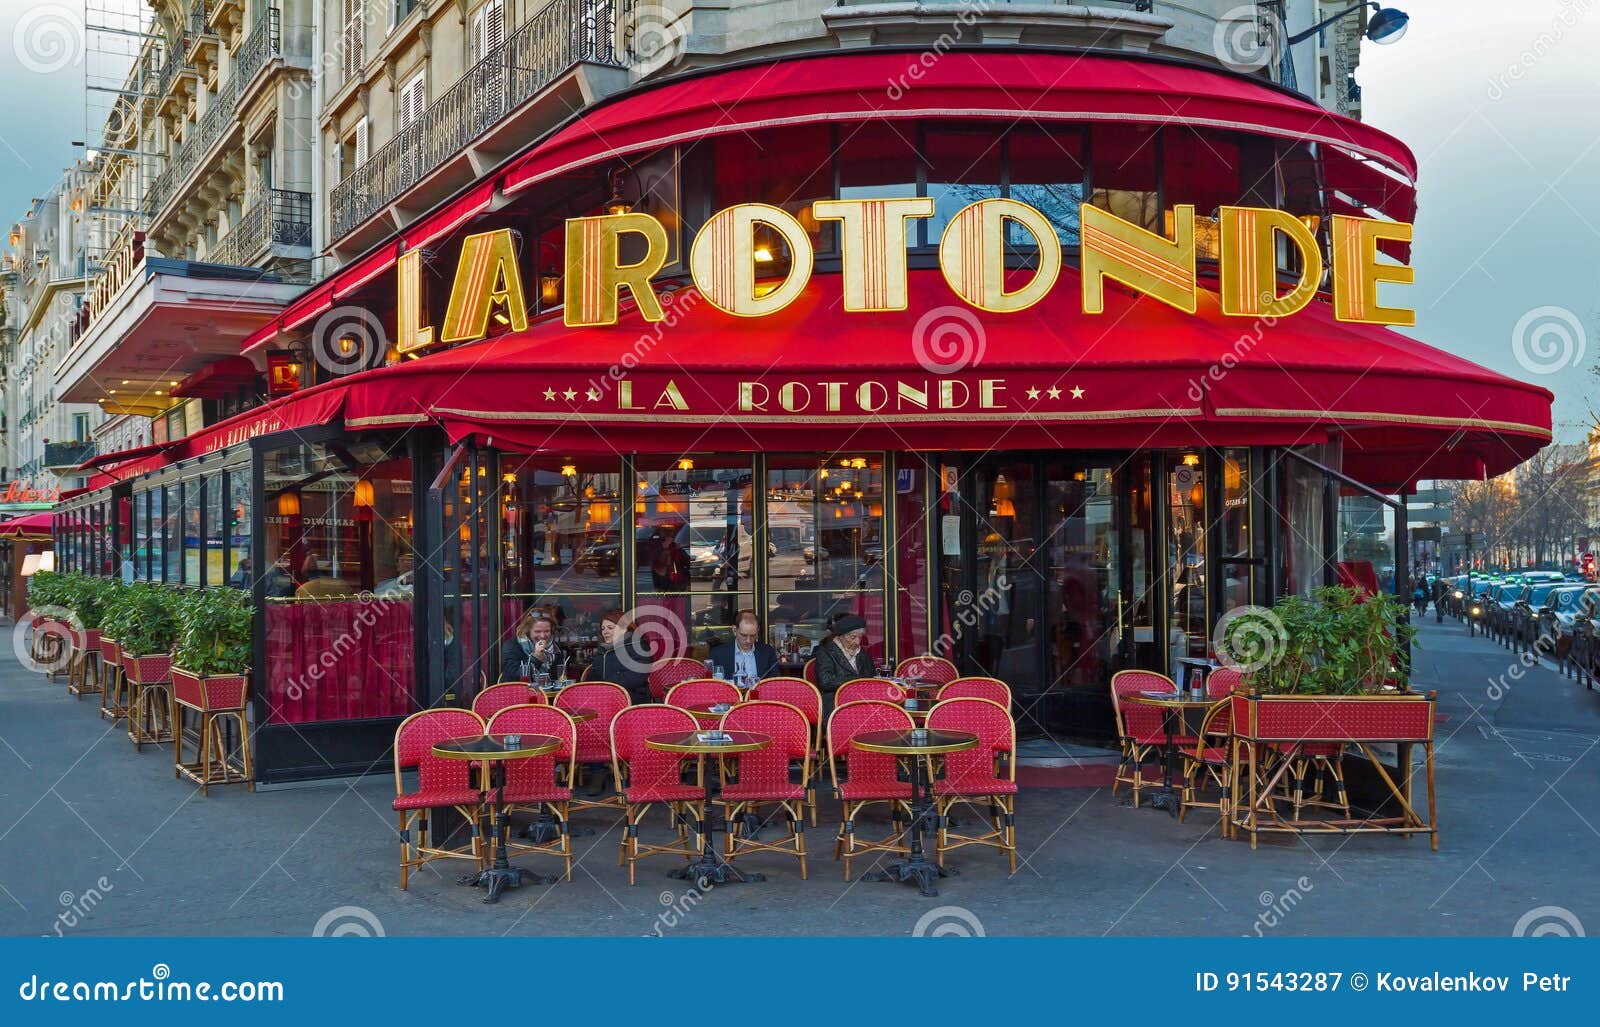 visit the Café de Flore  Paris vacation, Paris holiday, Paris cafe